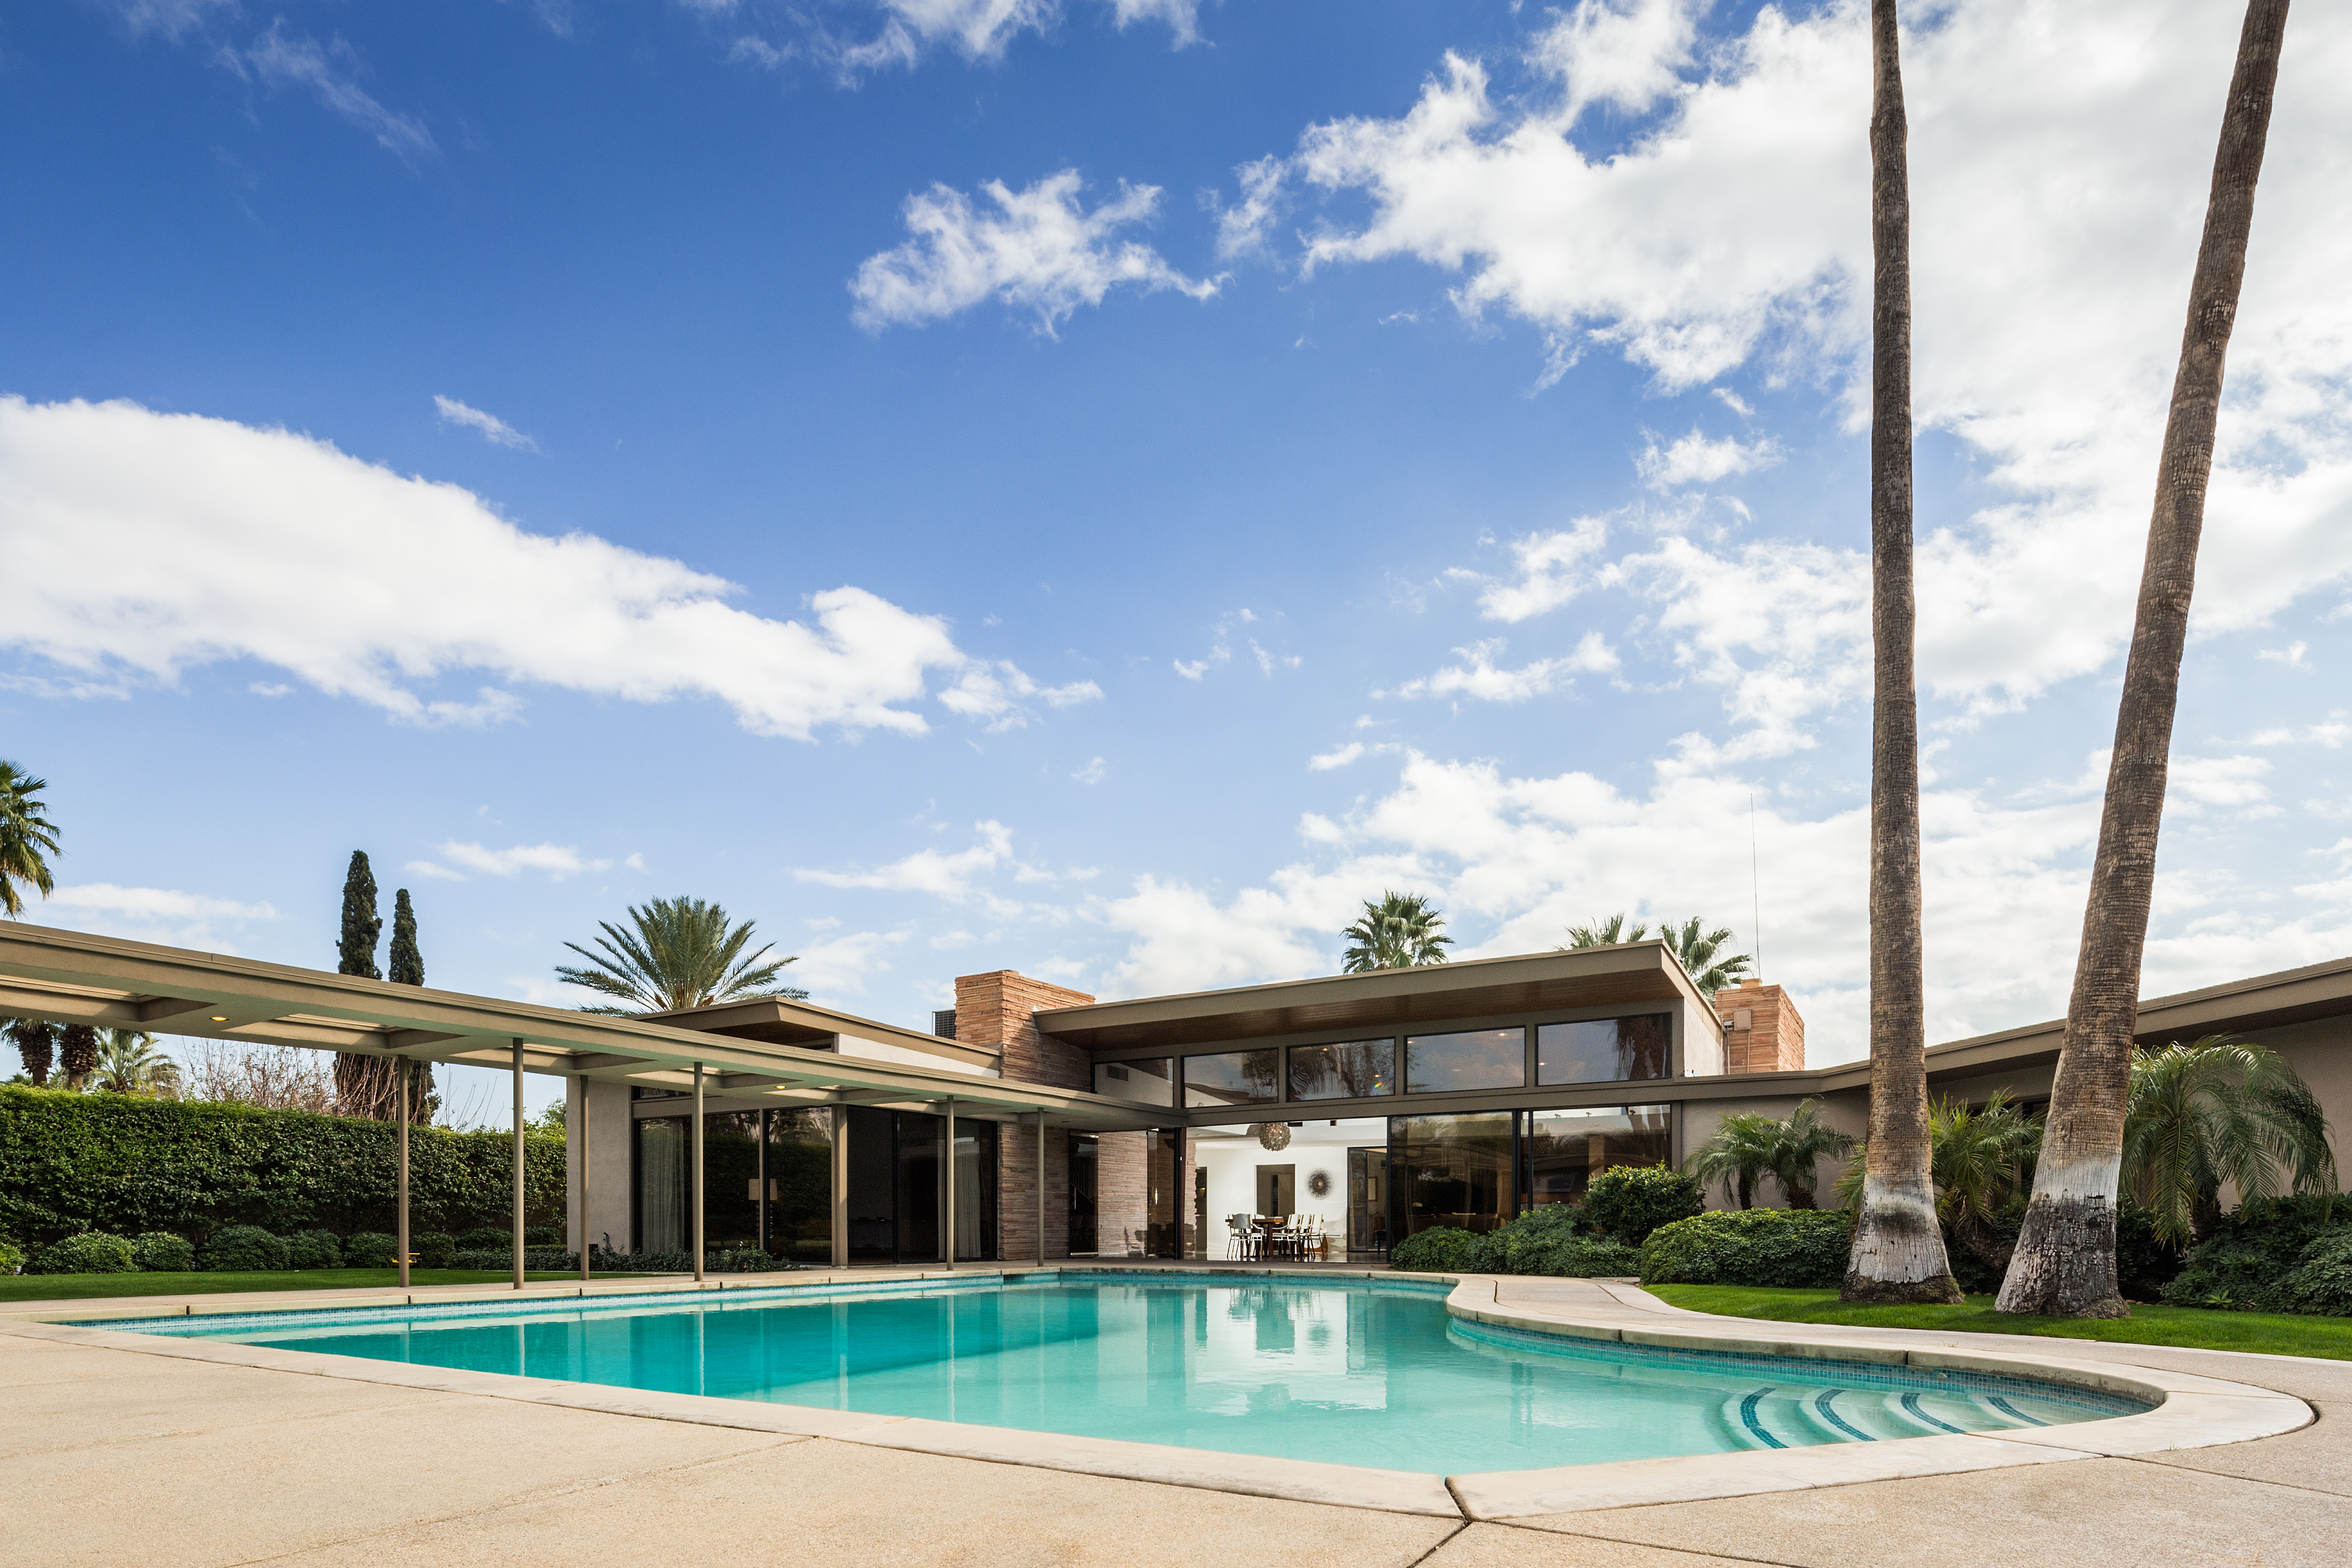 Frank Sinatra's Palm Springs home. 